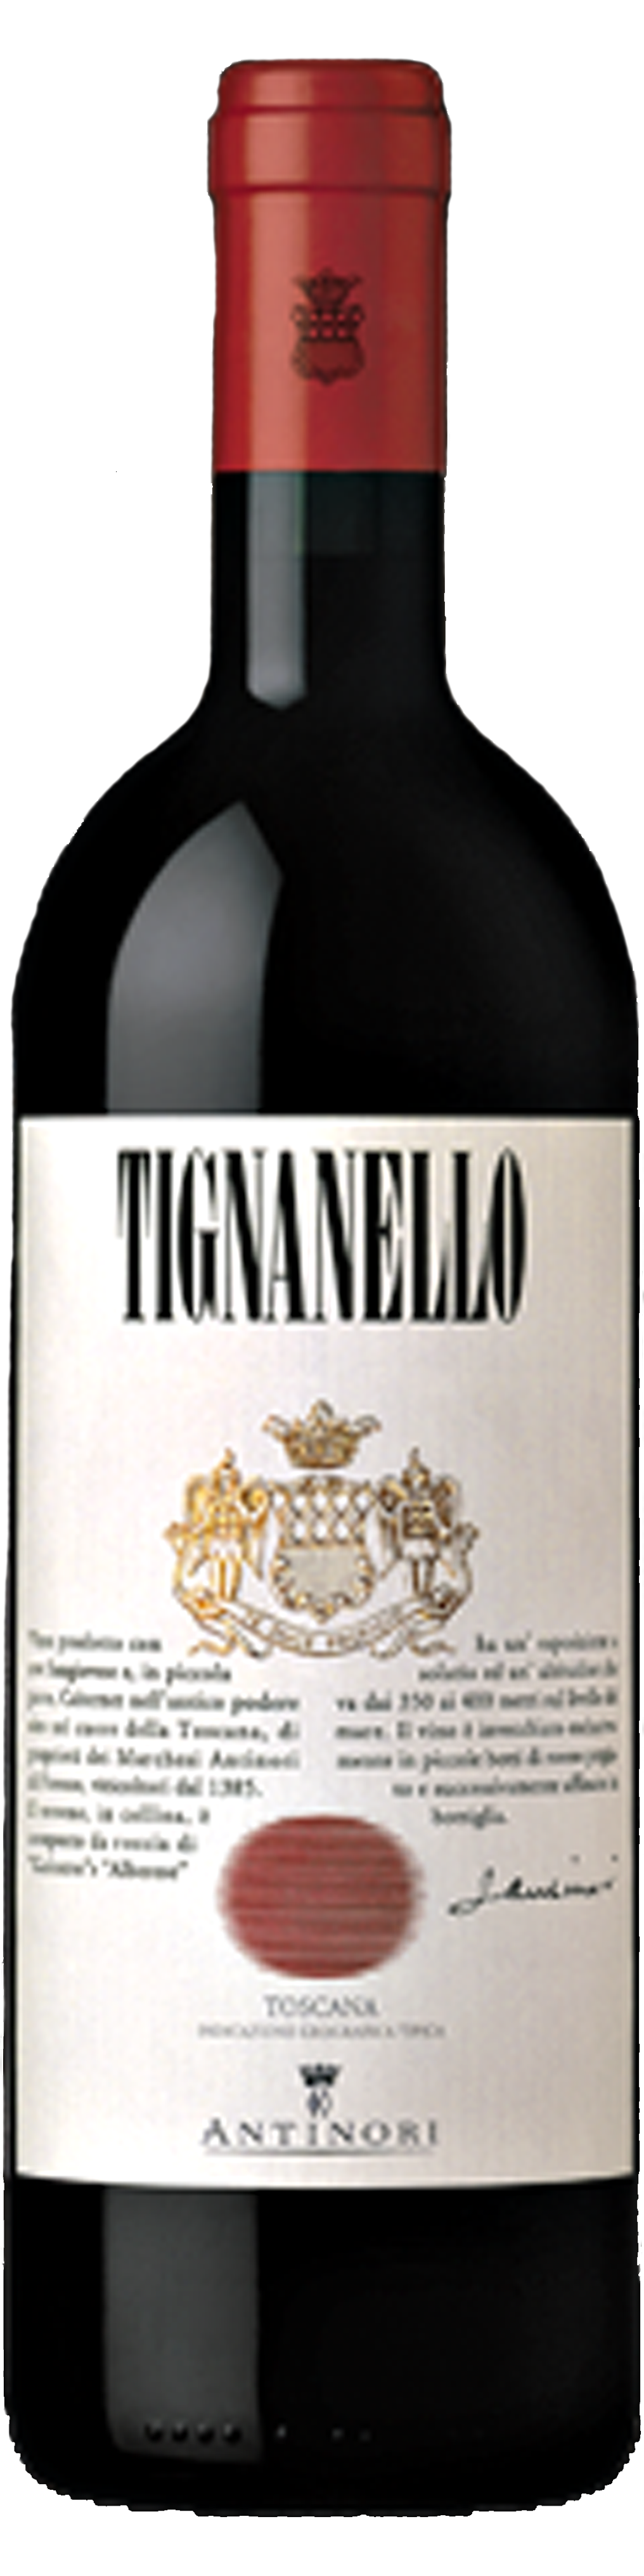 Bottle shot of 2013 Tignanello